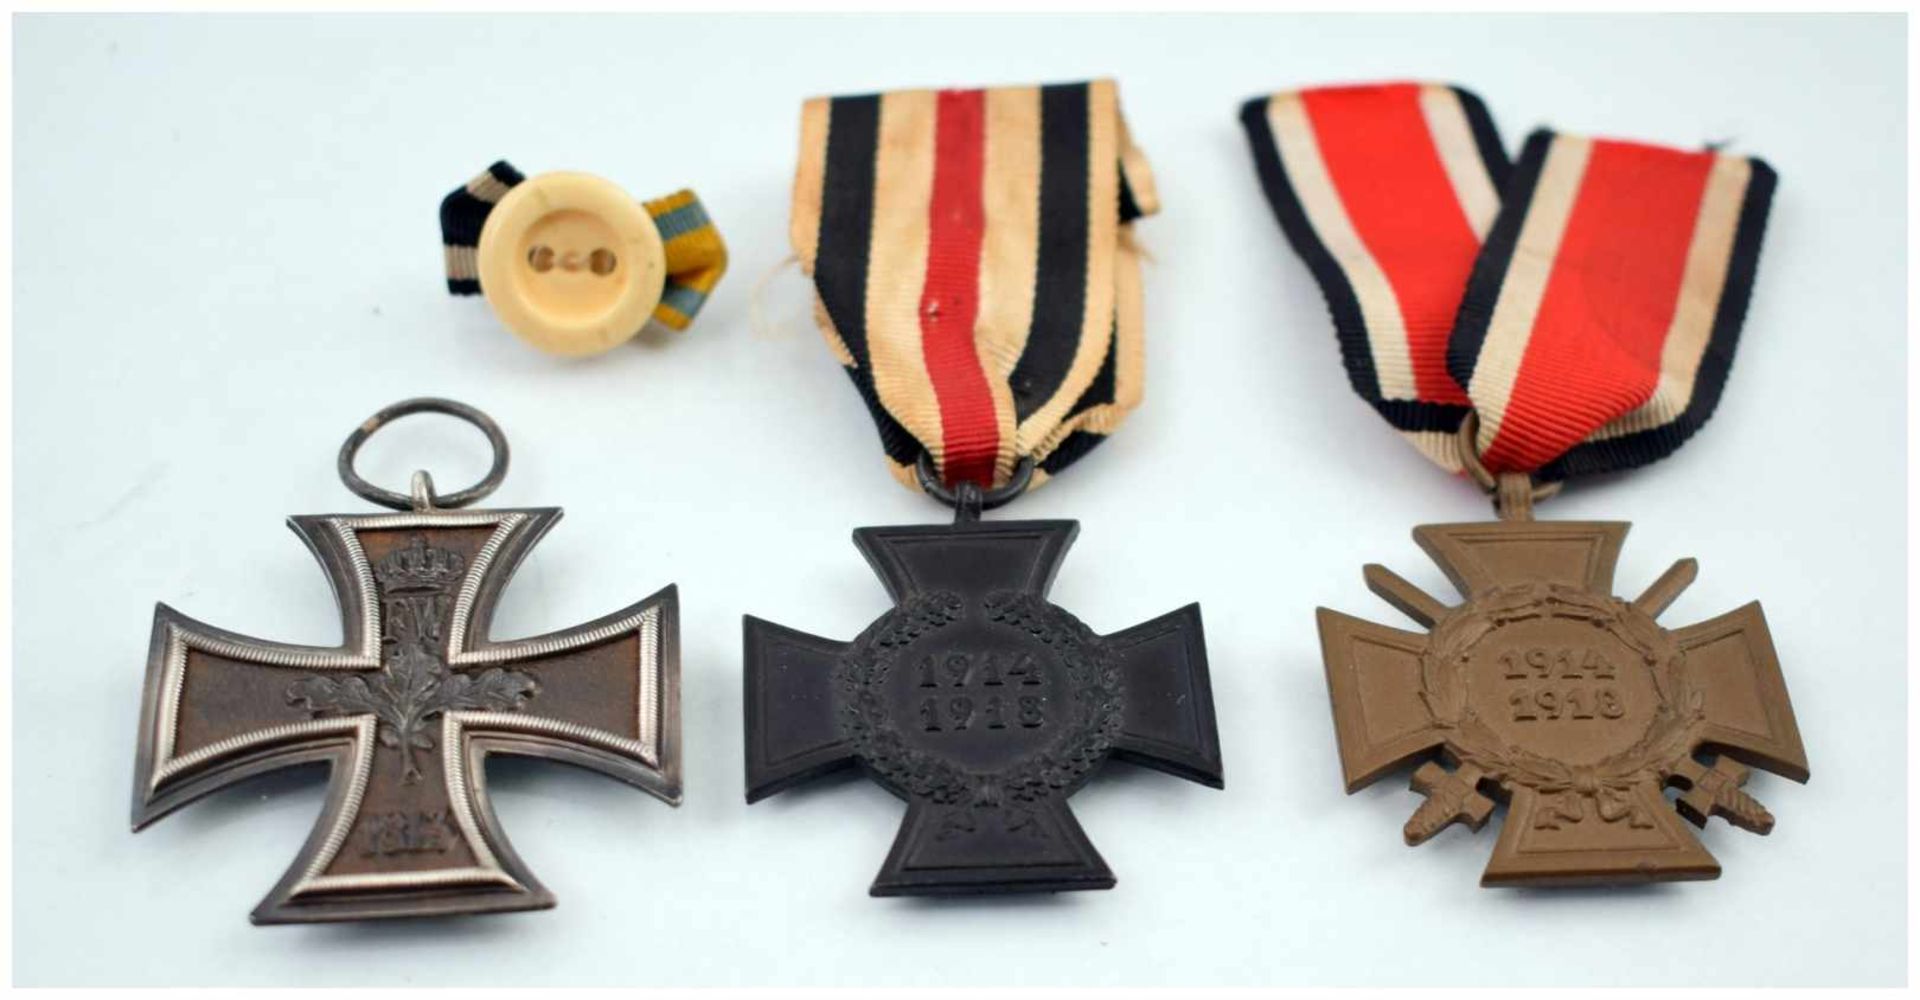 Drei Orden Kreuzanhänger, dat. 1813 bzw. 1914/1918